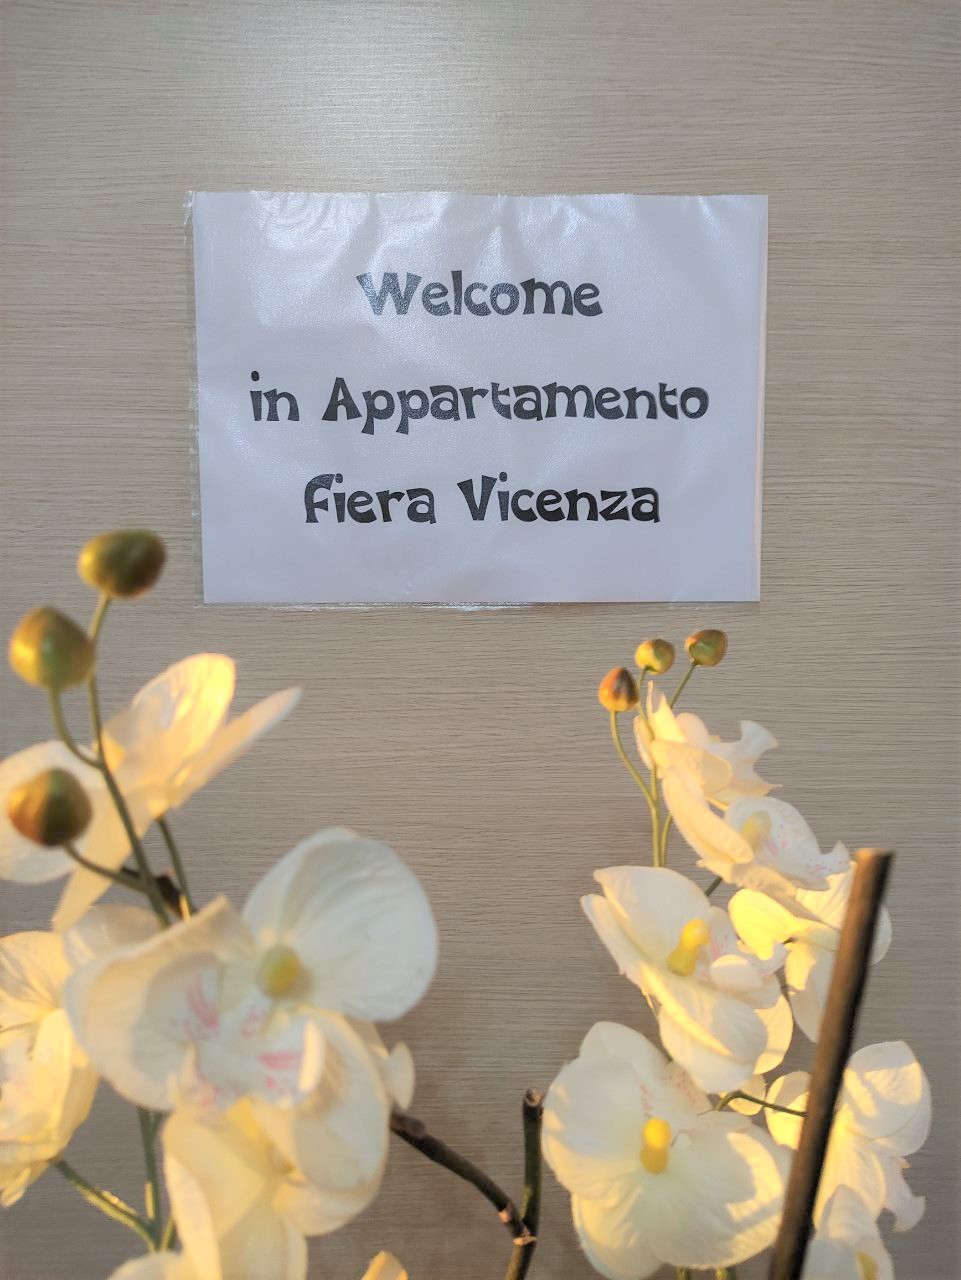 靠近Fiera Vicenza的现代公寓